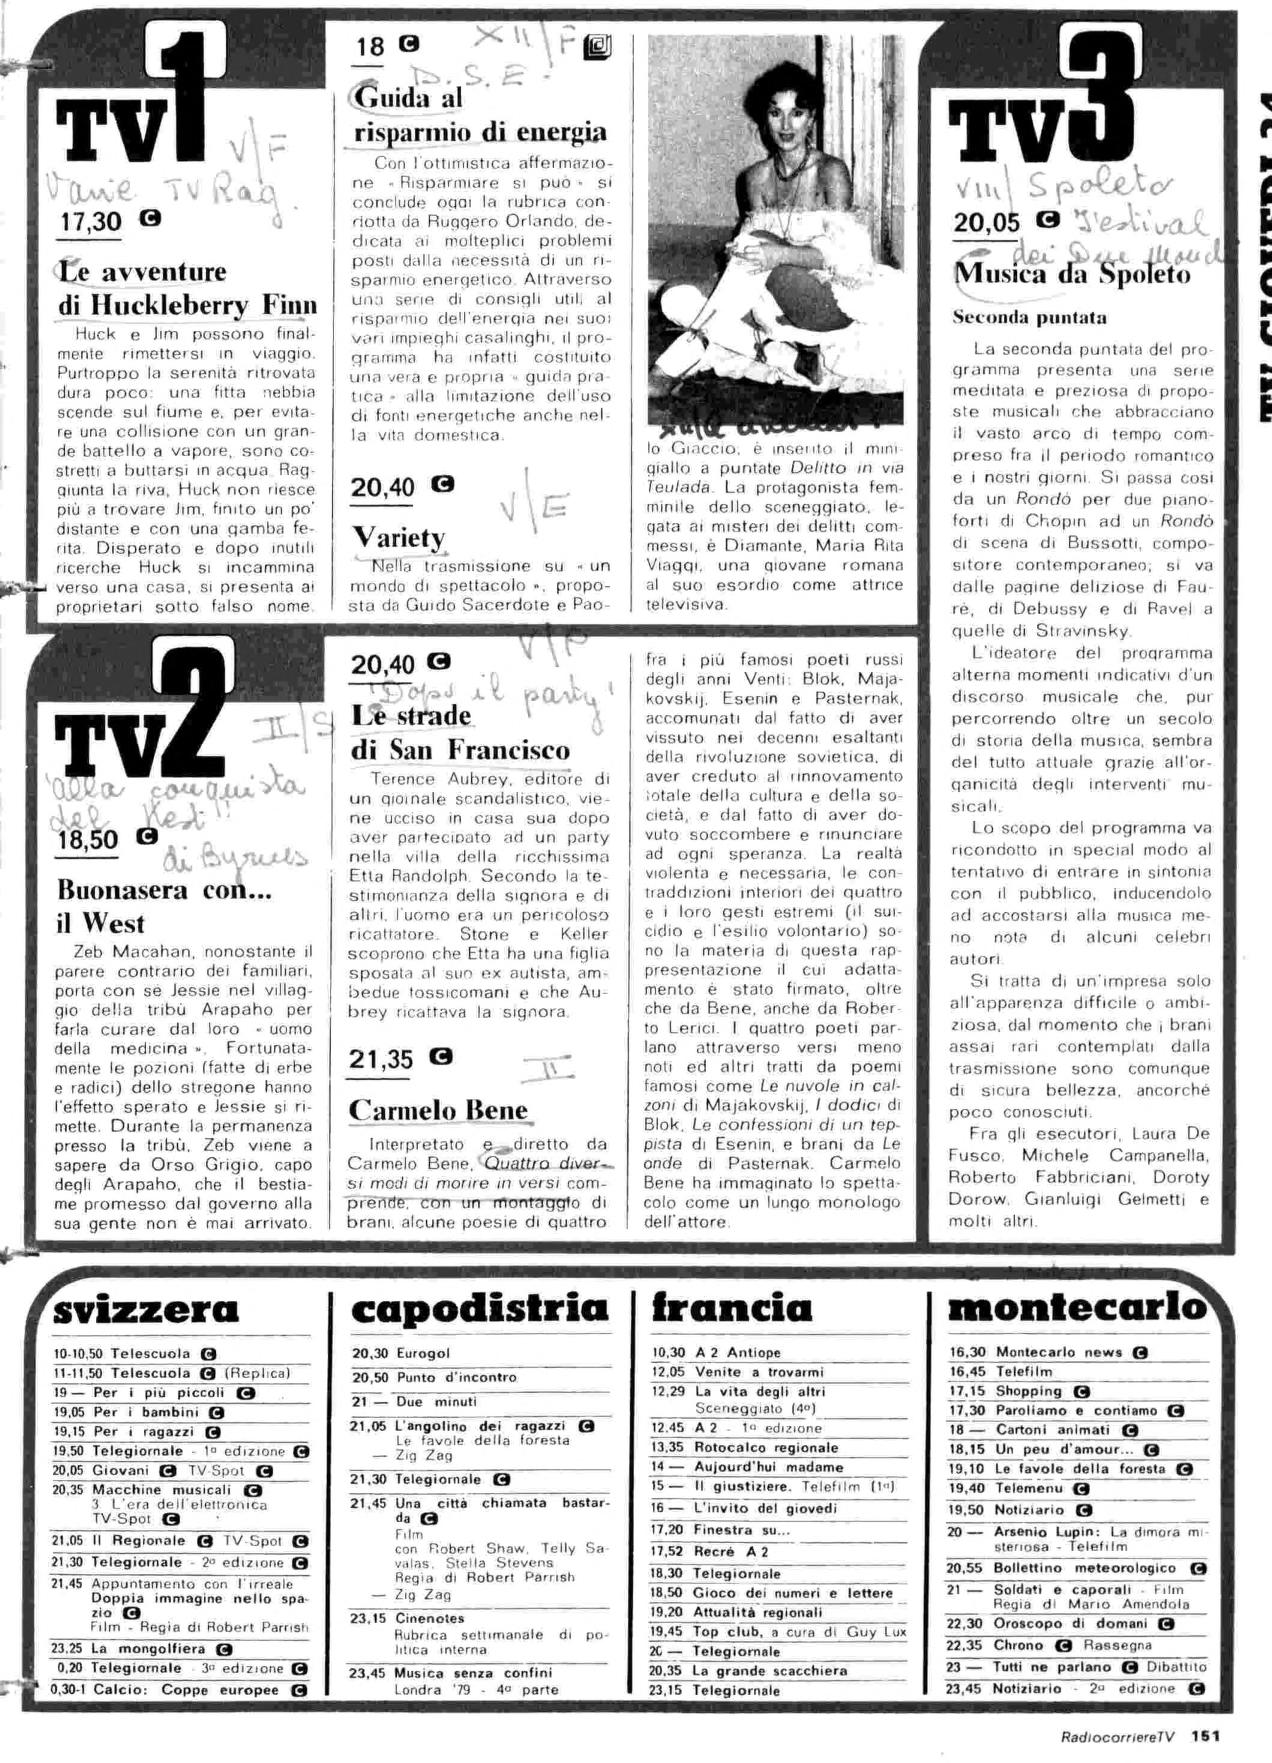 RC-1980-17_0150.jp2&id=Radiocorriere-198